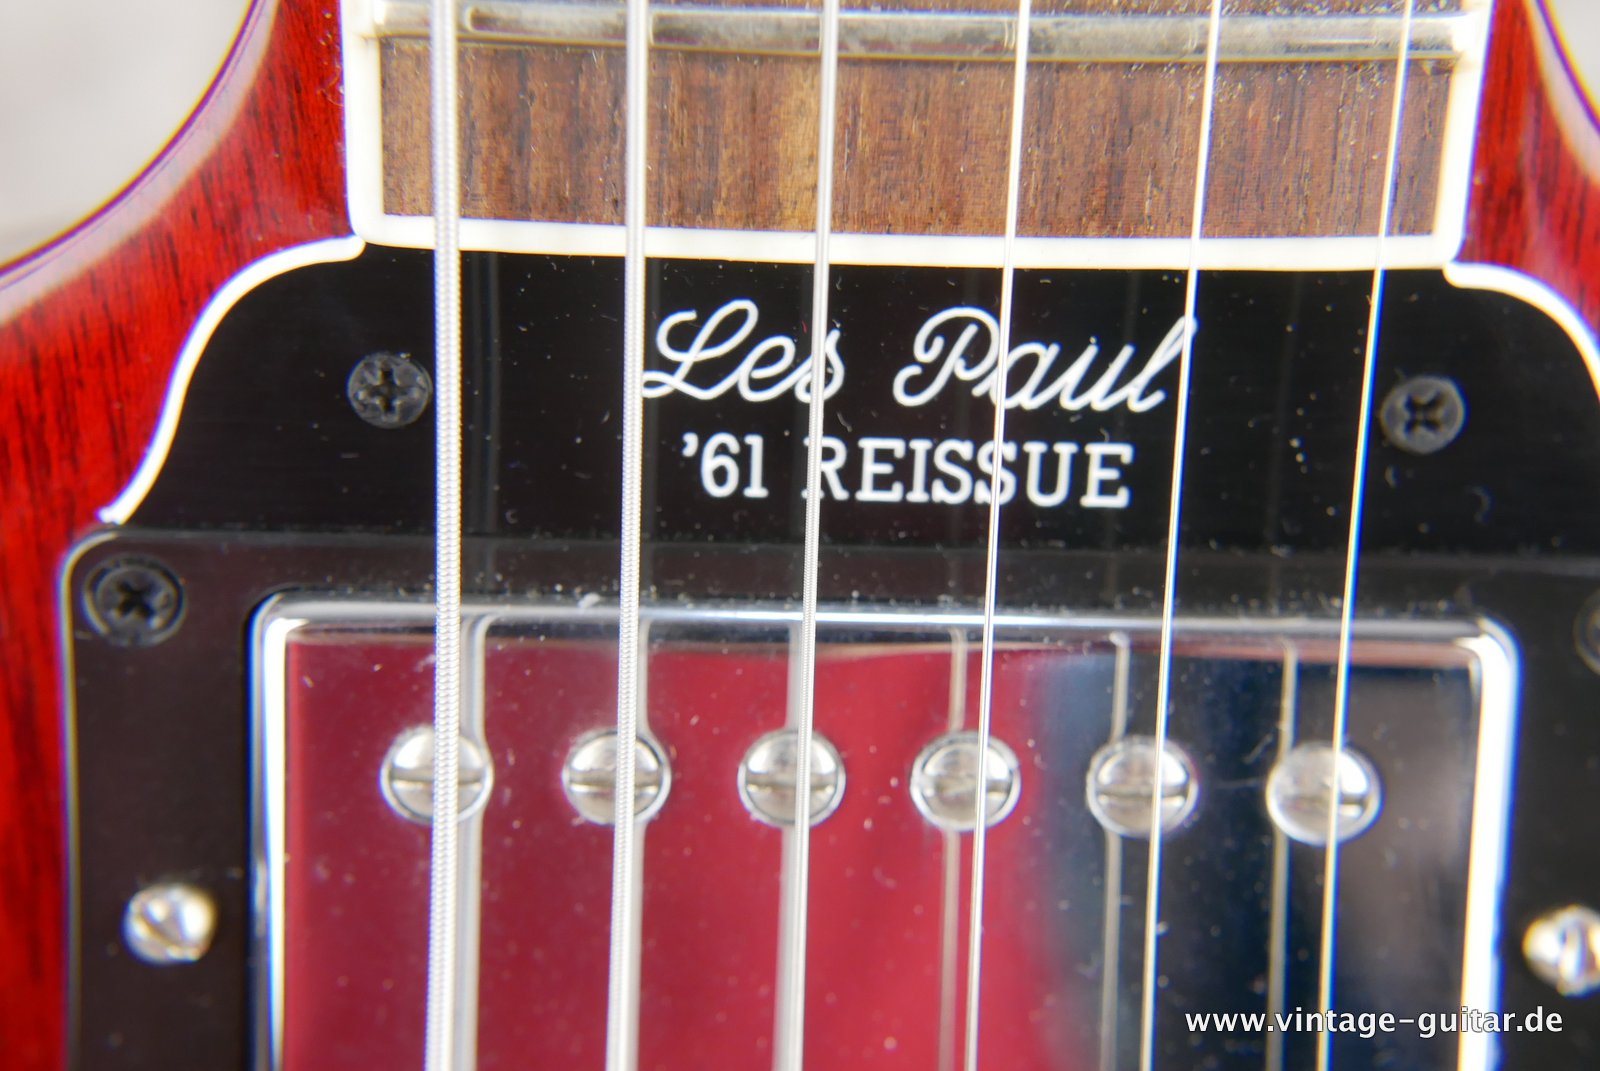 Gibson-SG-Standard-61-Les Paul-Reissue-2017-014.JPG